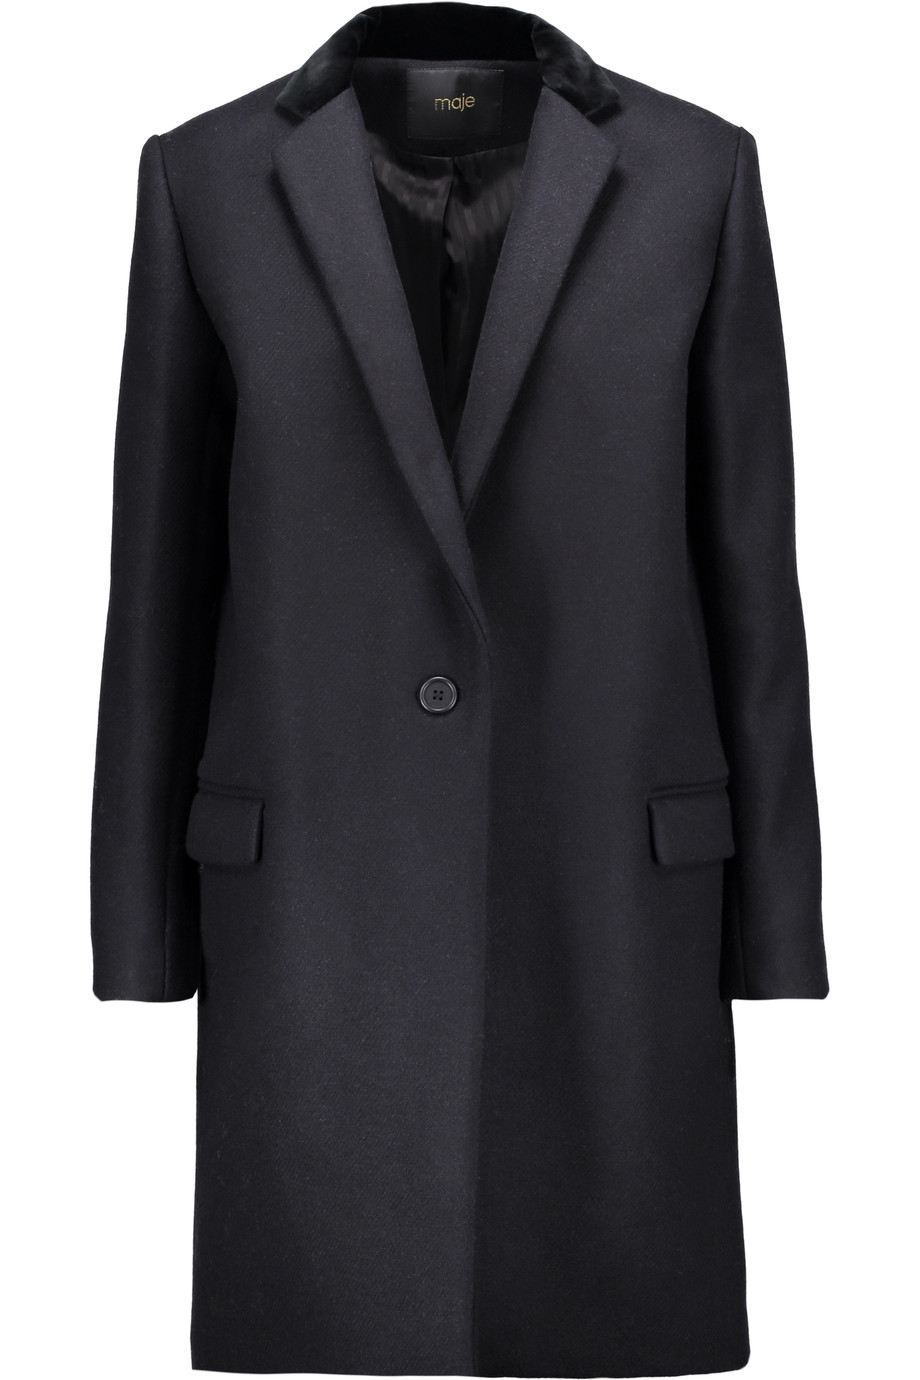 Maje Velvet-trimmed Wool-blend Coat | ModeSens